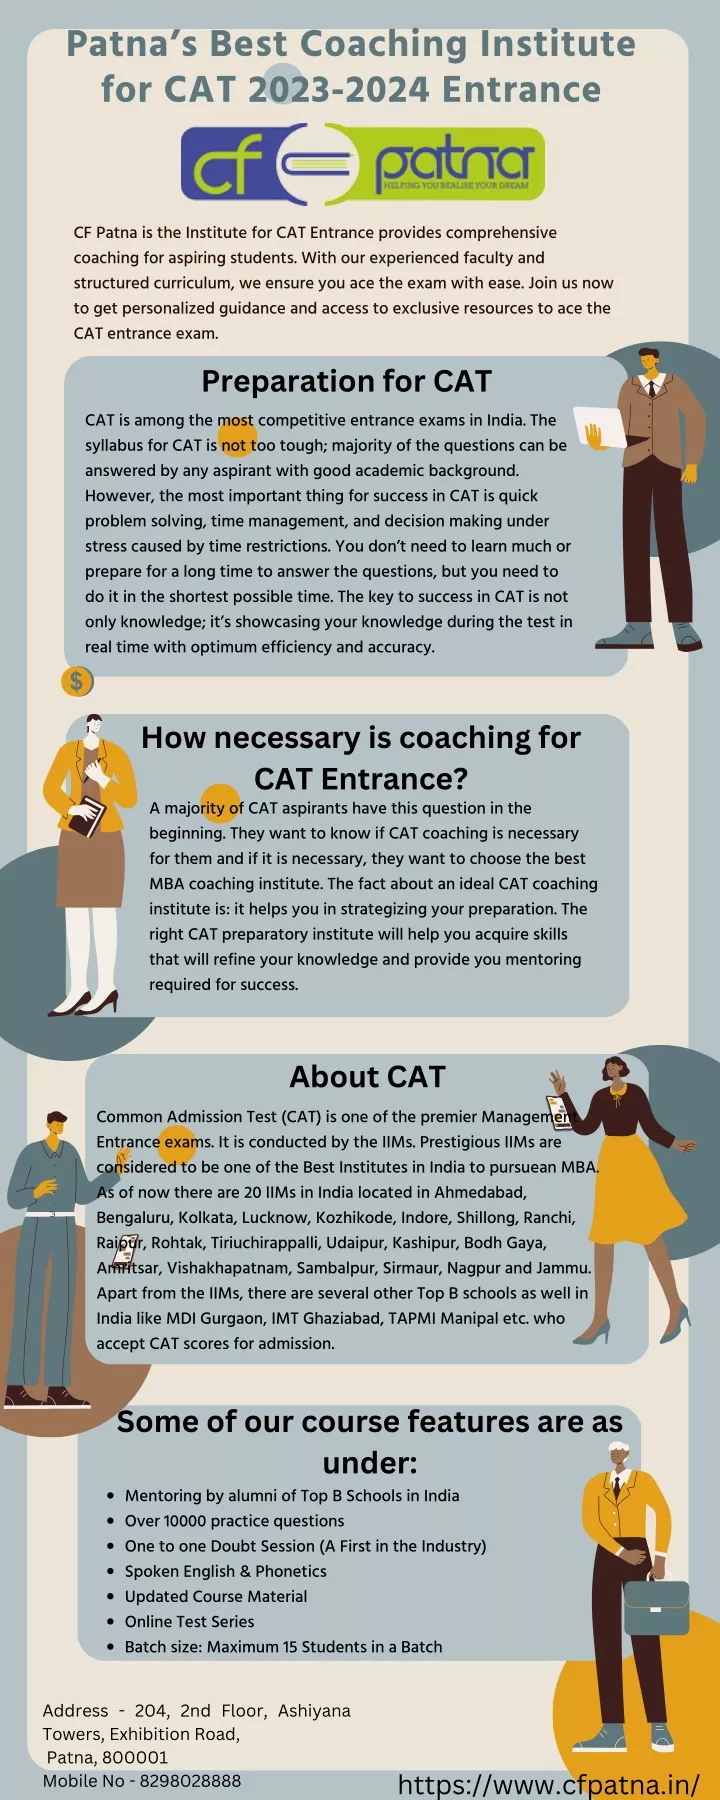 patna s best coaching institute for cat 2023 2024